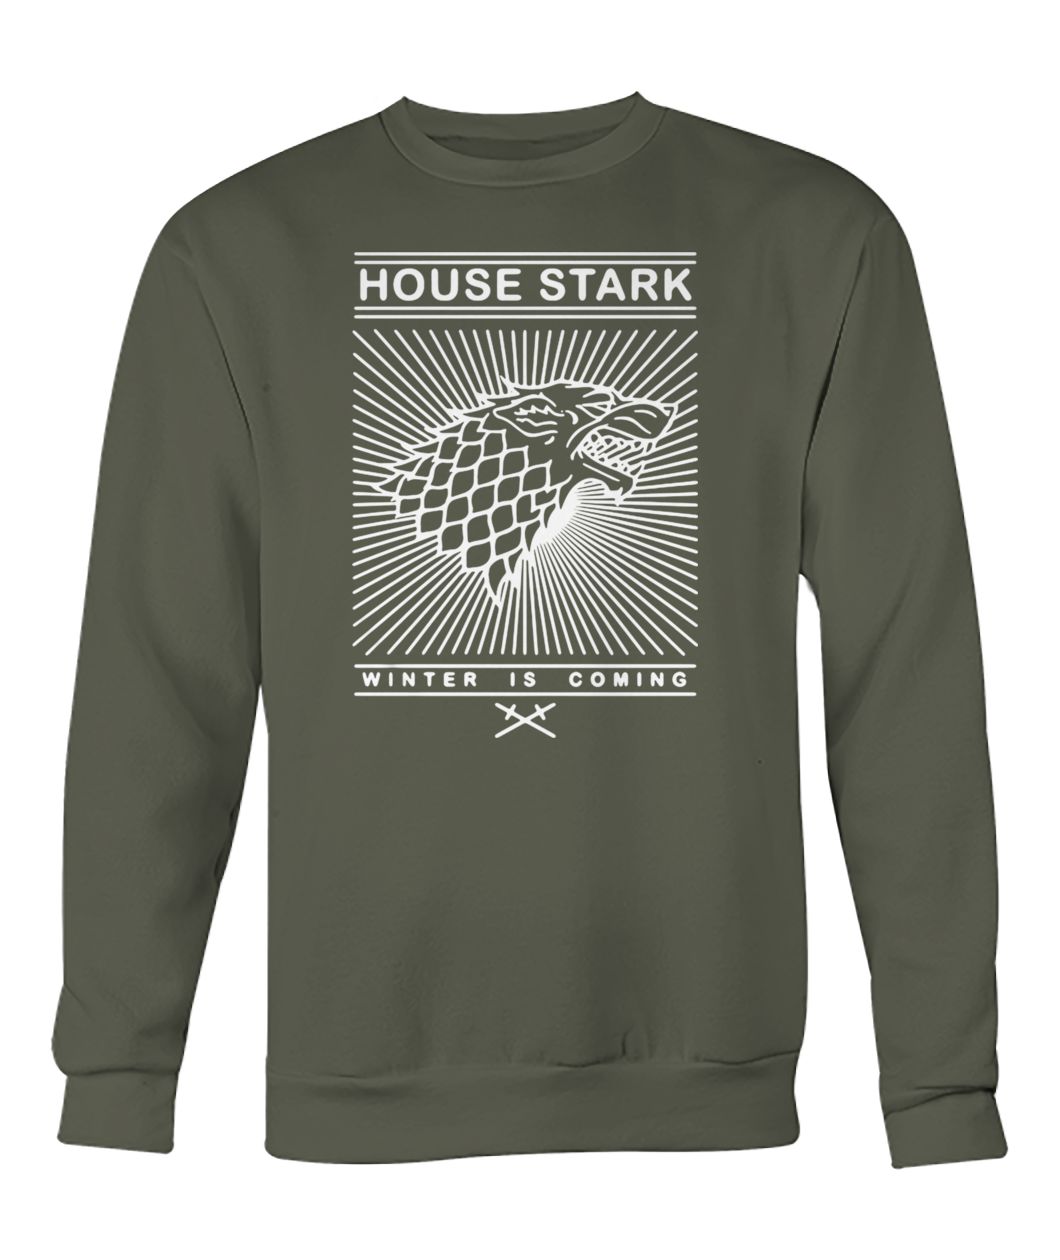 Game of thrones house stark winter is coming crew neck sweatshirt